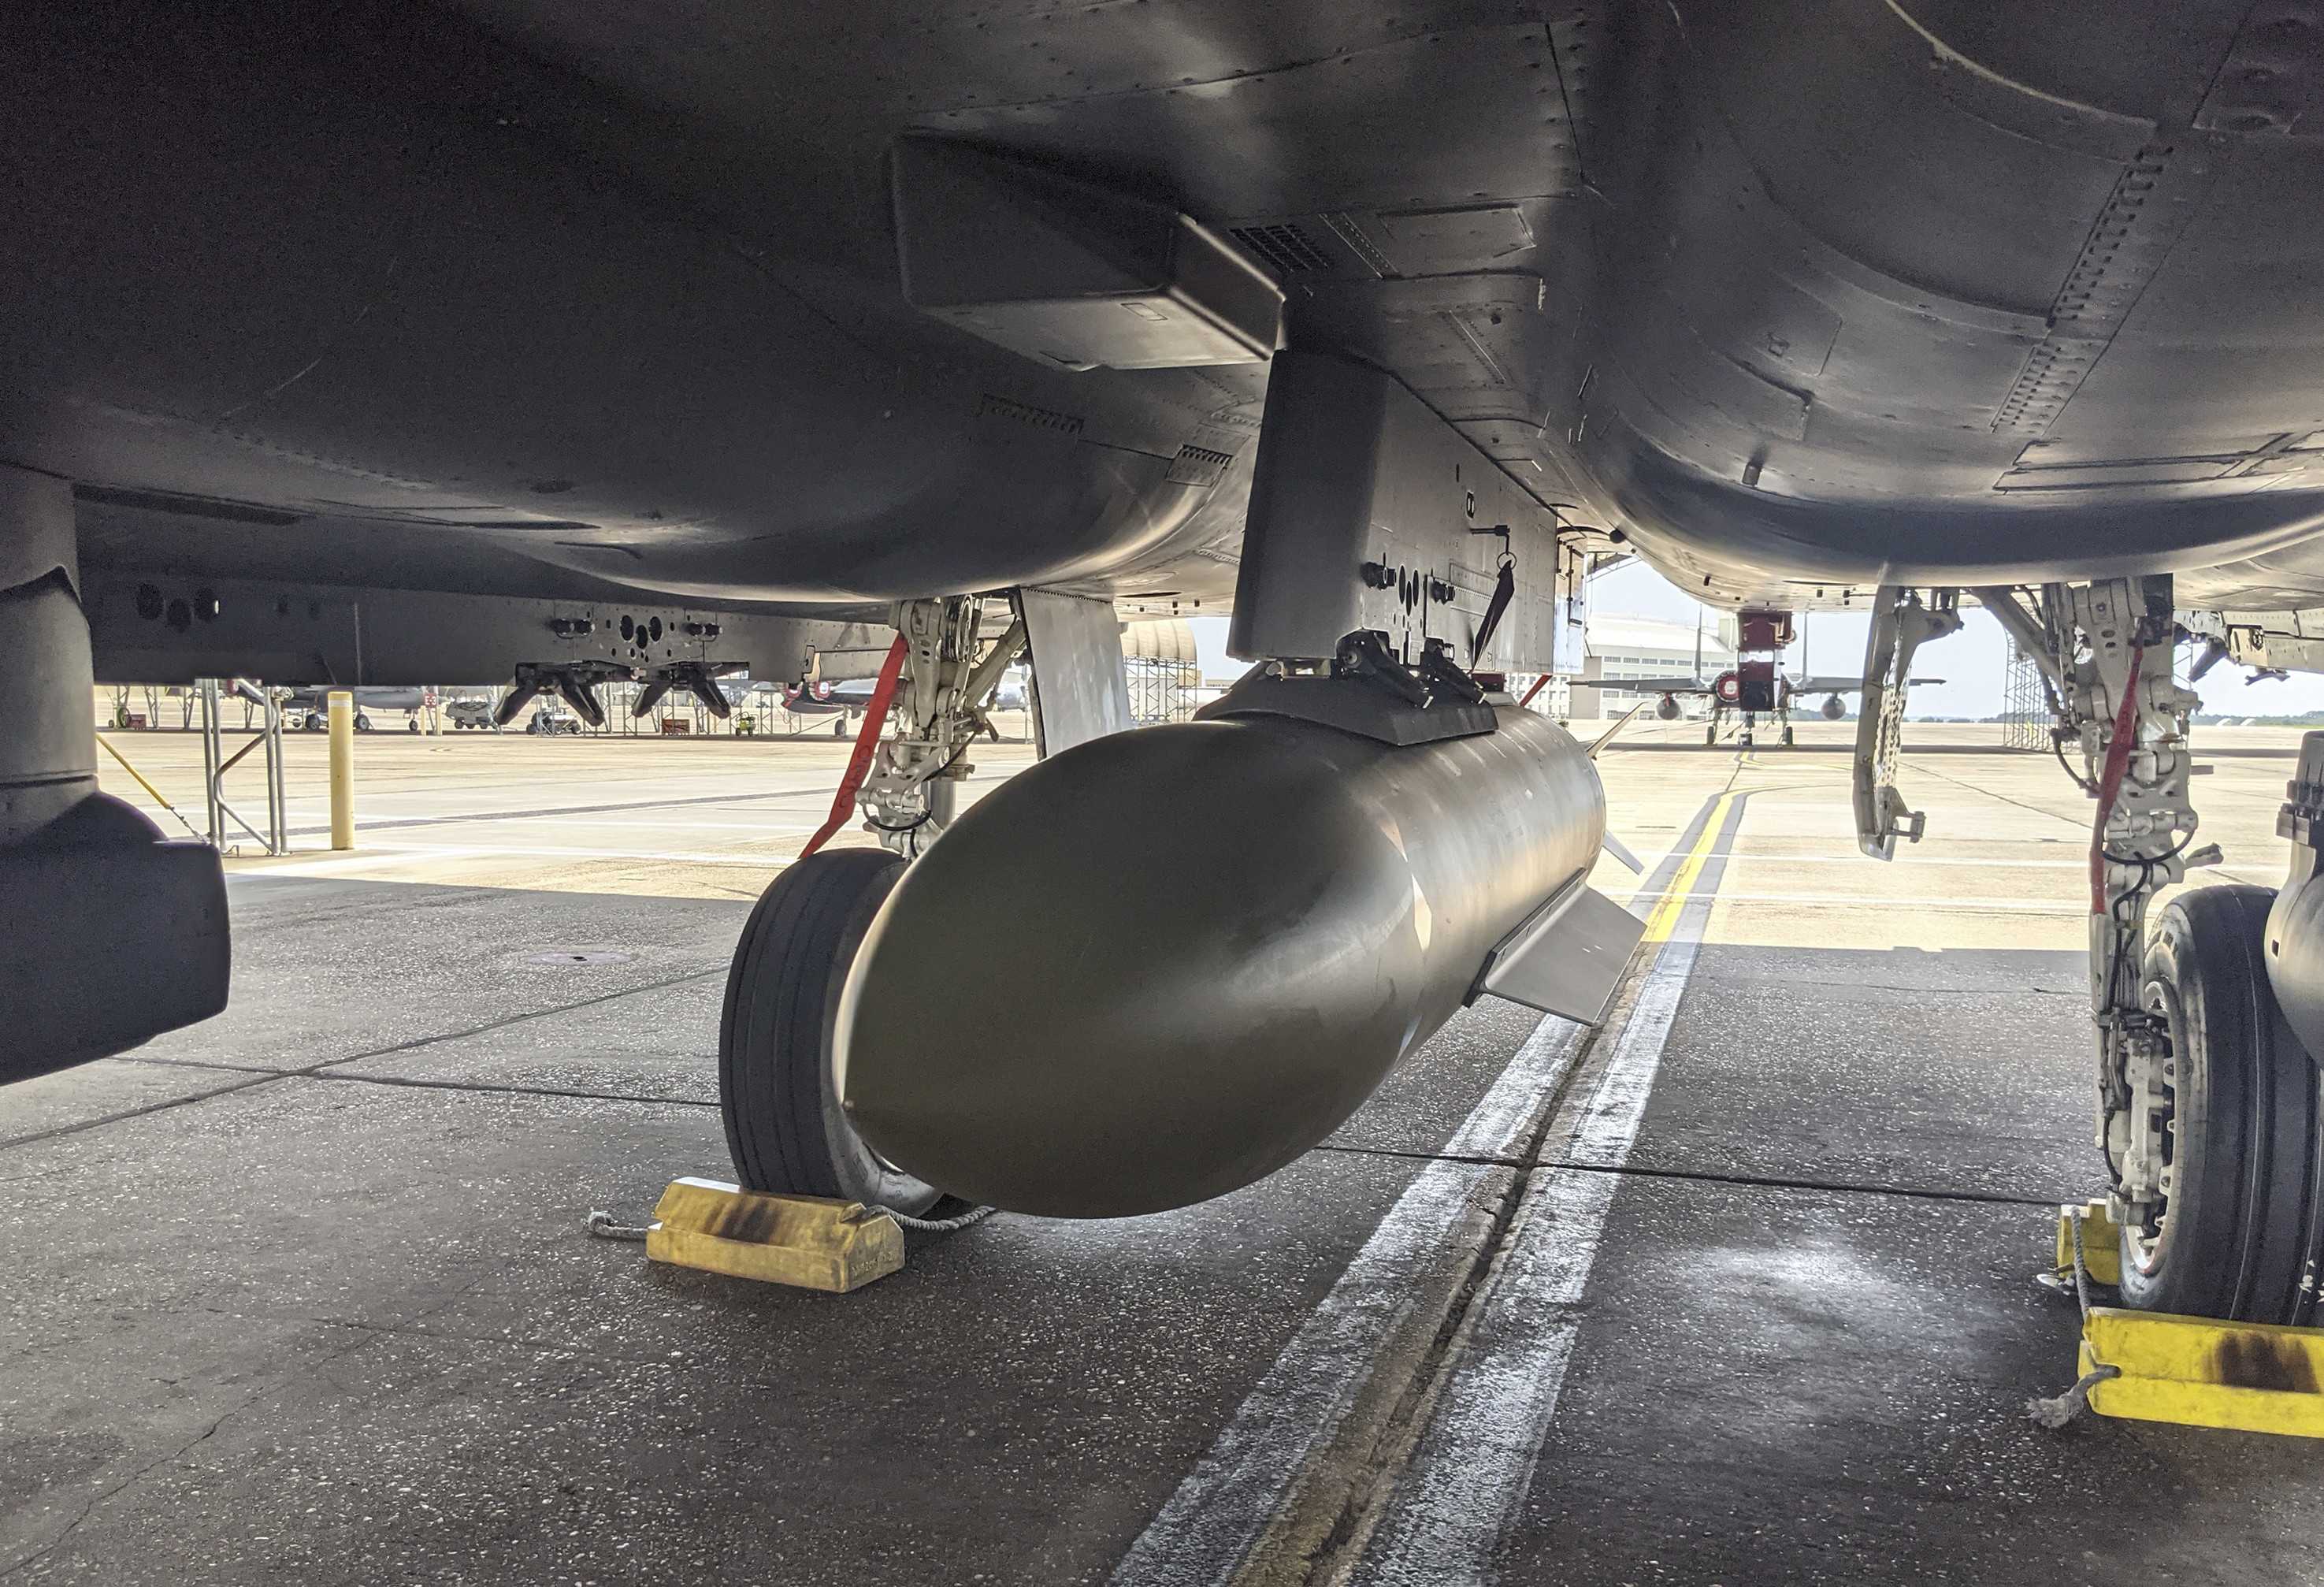 Американцы сбросили бетонобойную бомбу GBU-72 массой 2,3 тонны